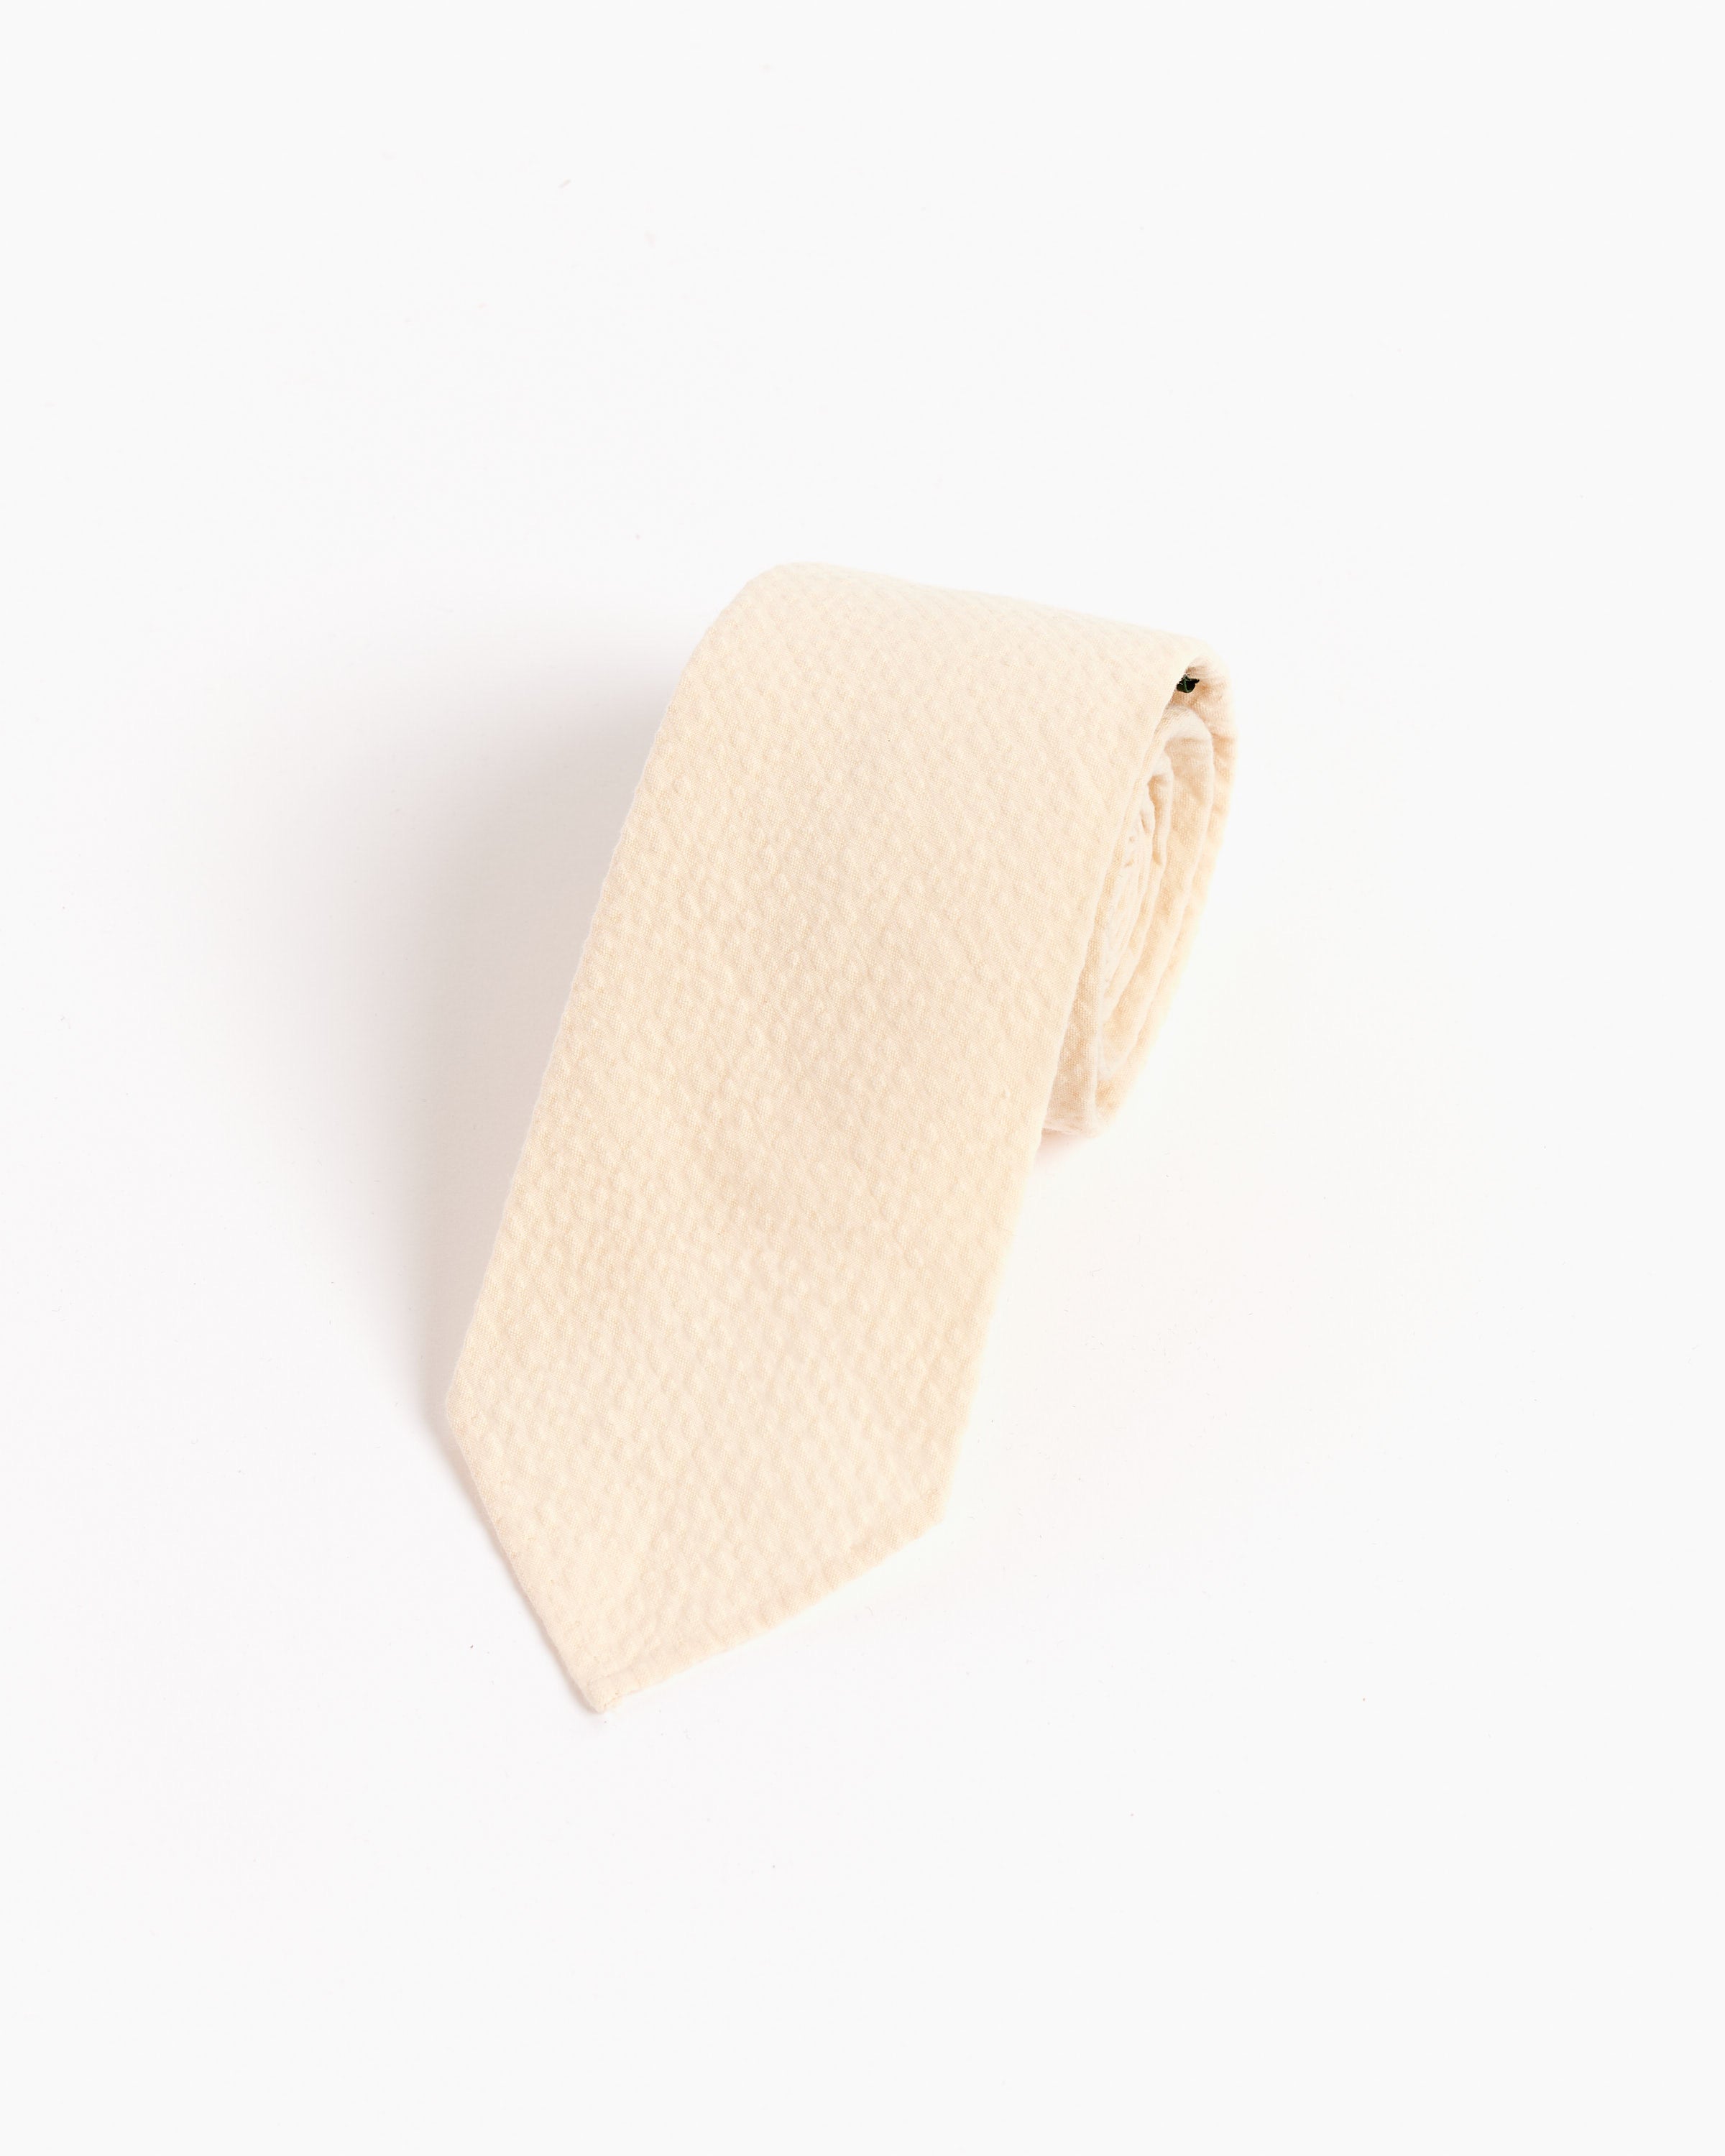 SMOCK x Gitman Vintage Tie Seersucker in Cream